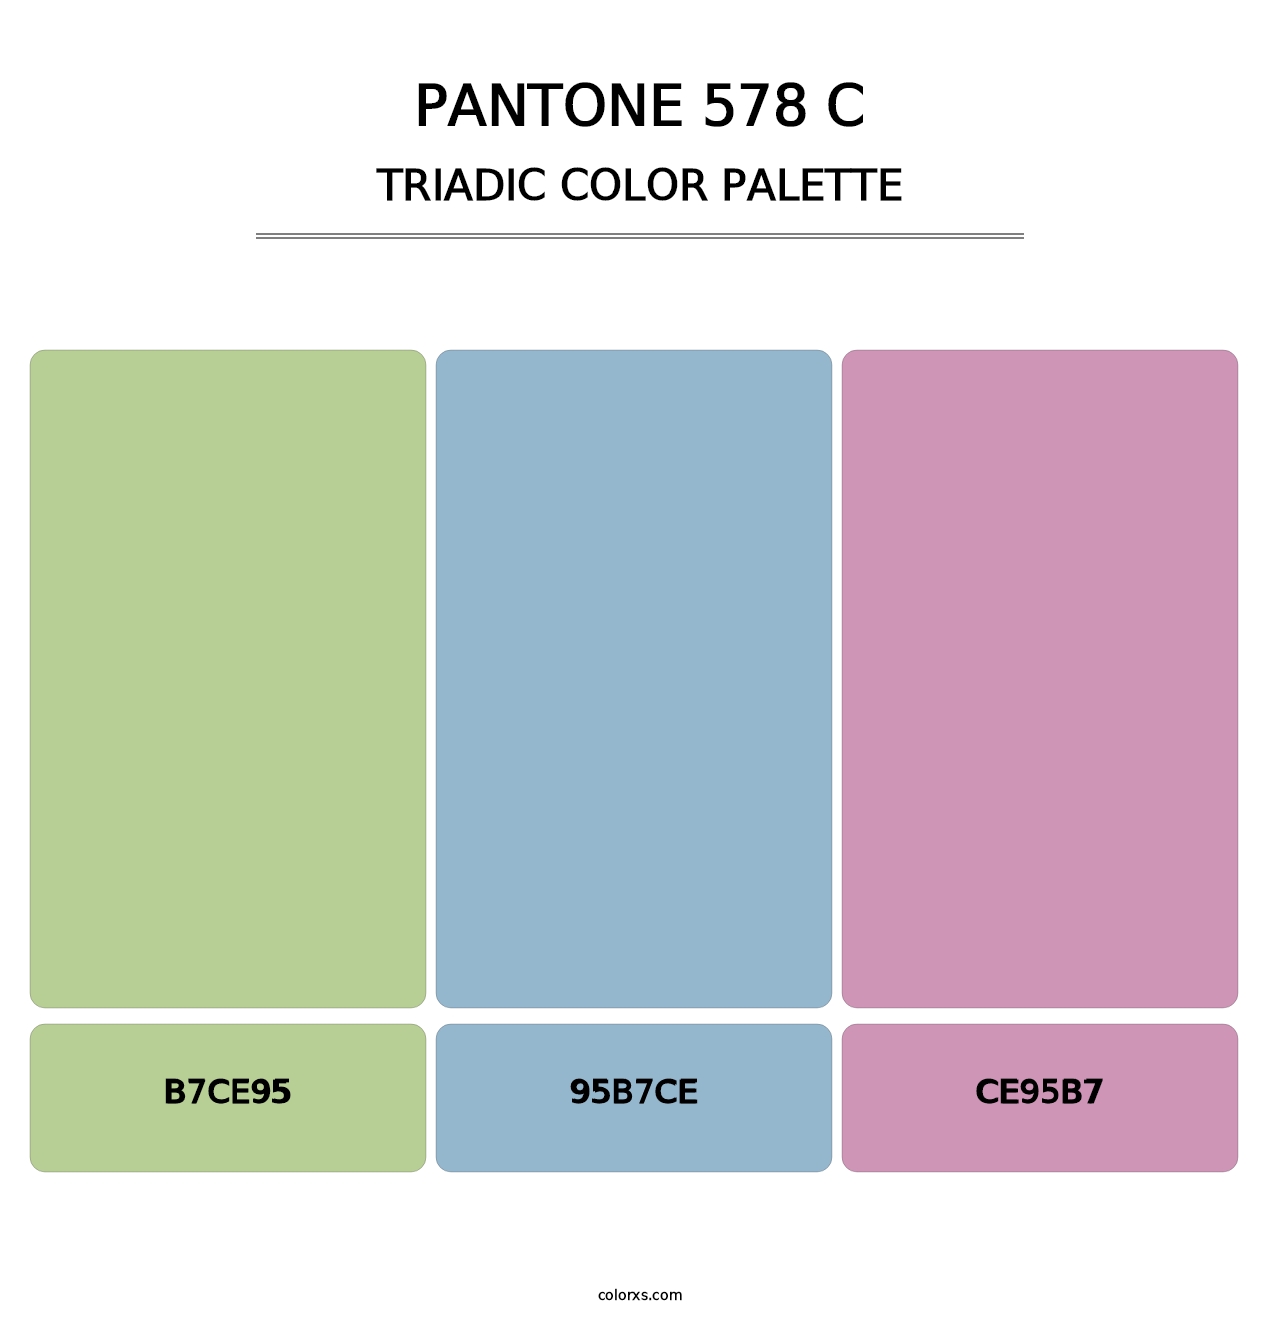 PANTONE 578 C - Triadic Color Palette